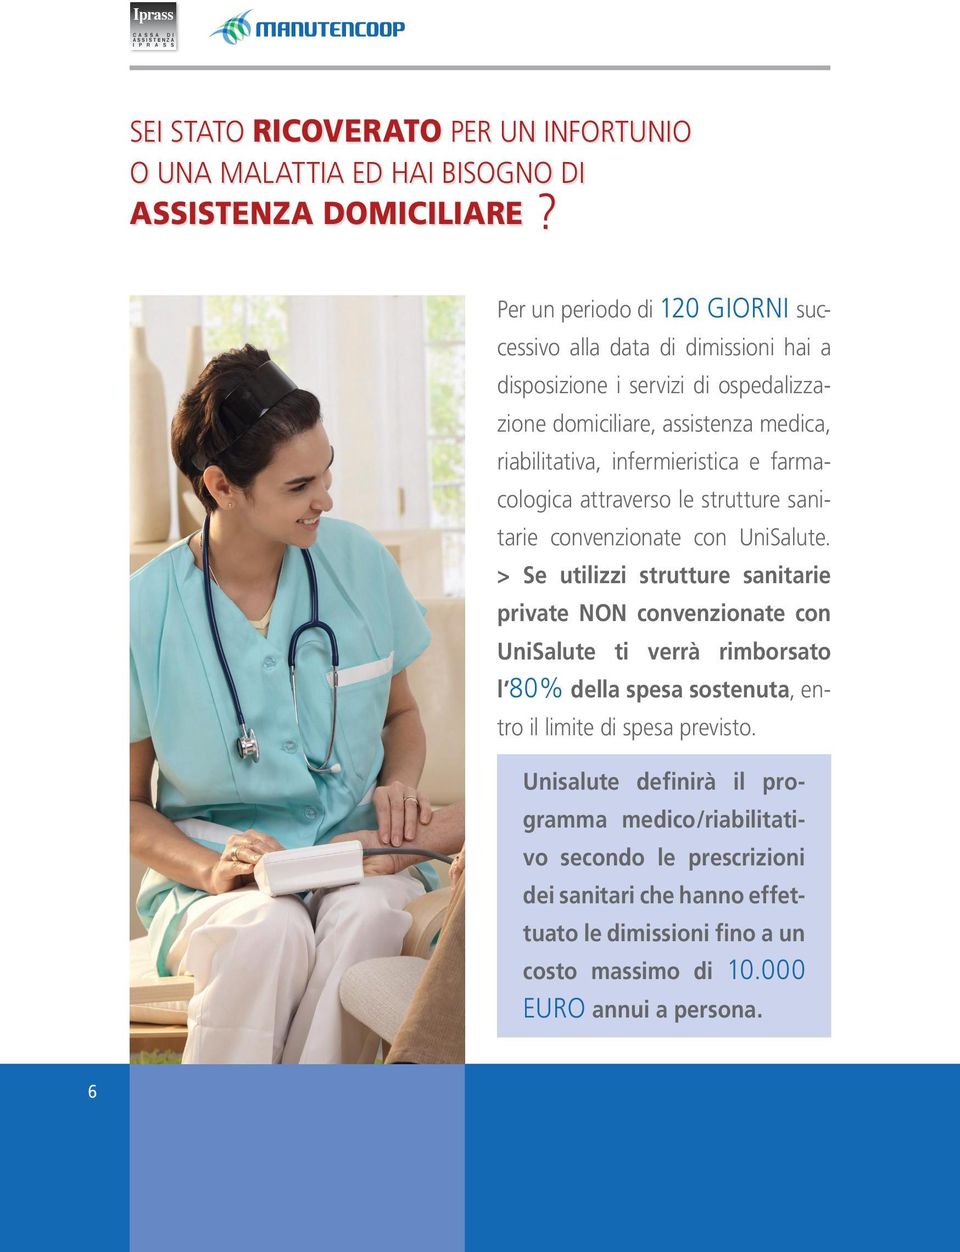 infermieristica e farmacologica attraverso le strutture sanitarie convenzionate con UniSalute.